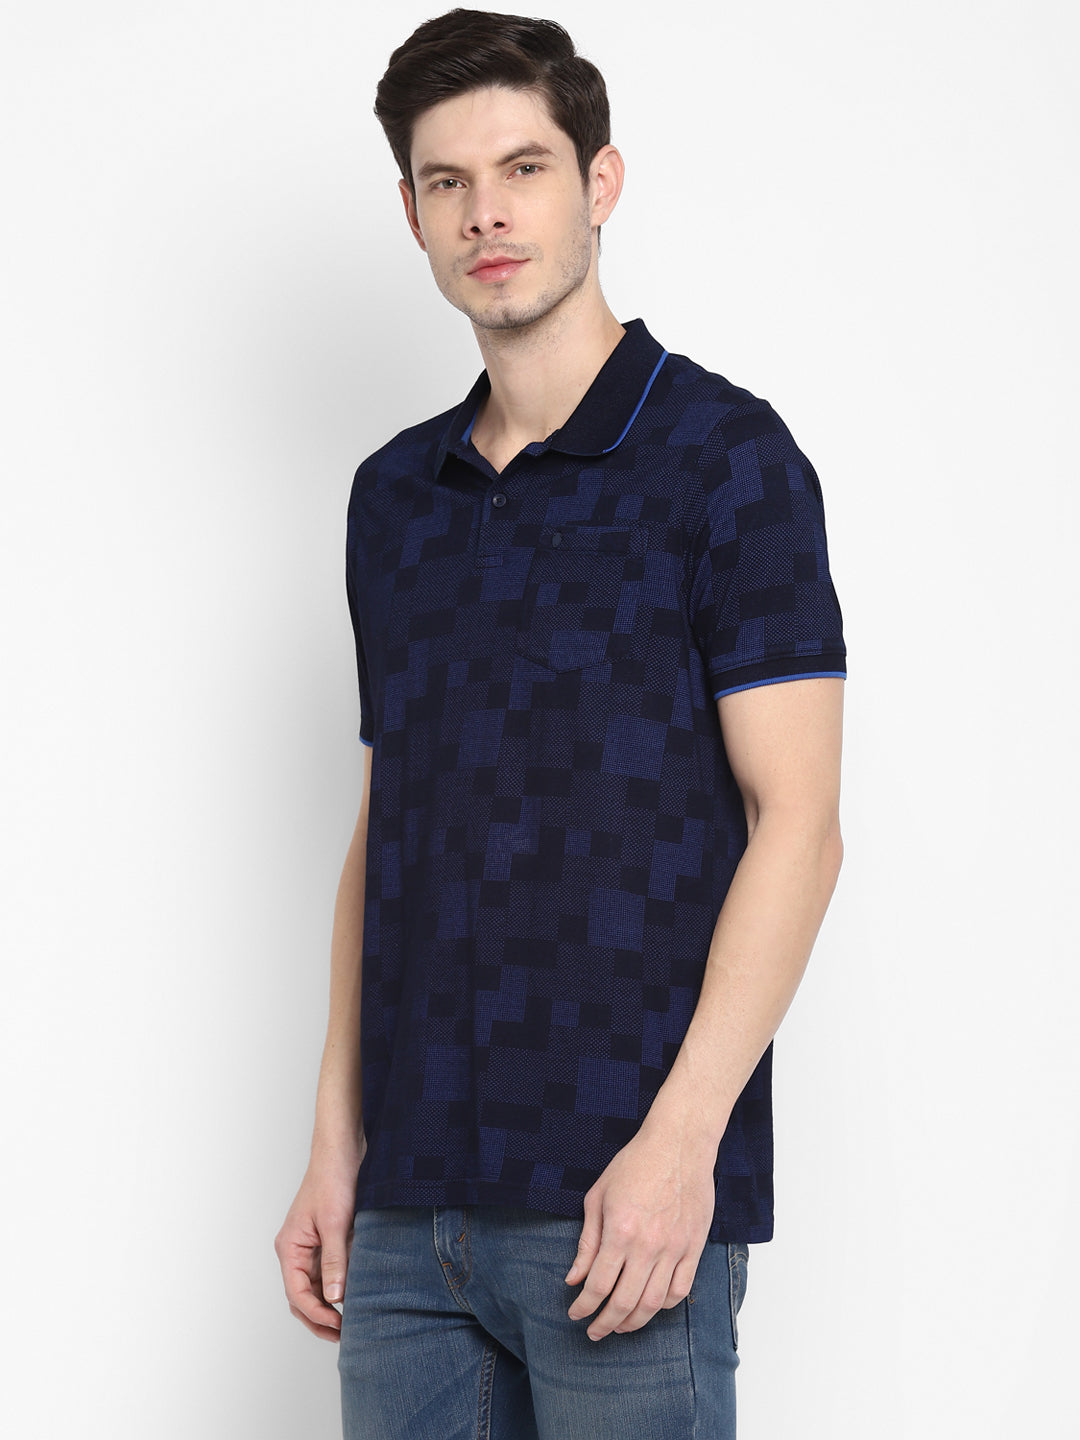 100% Cotton Indigo Navy Blue Printed Polo Neck Half Sleeve Casual T-Shirt